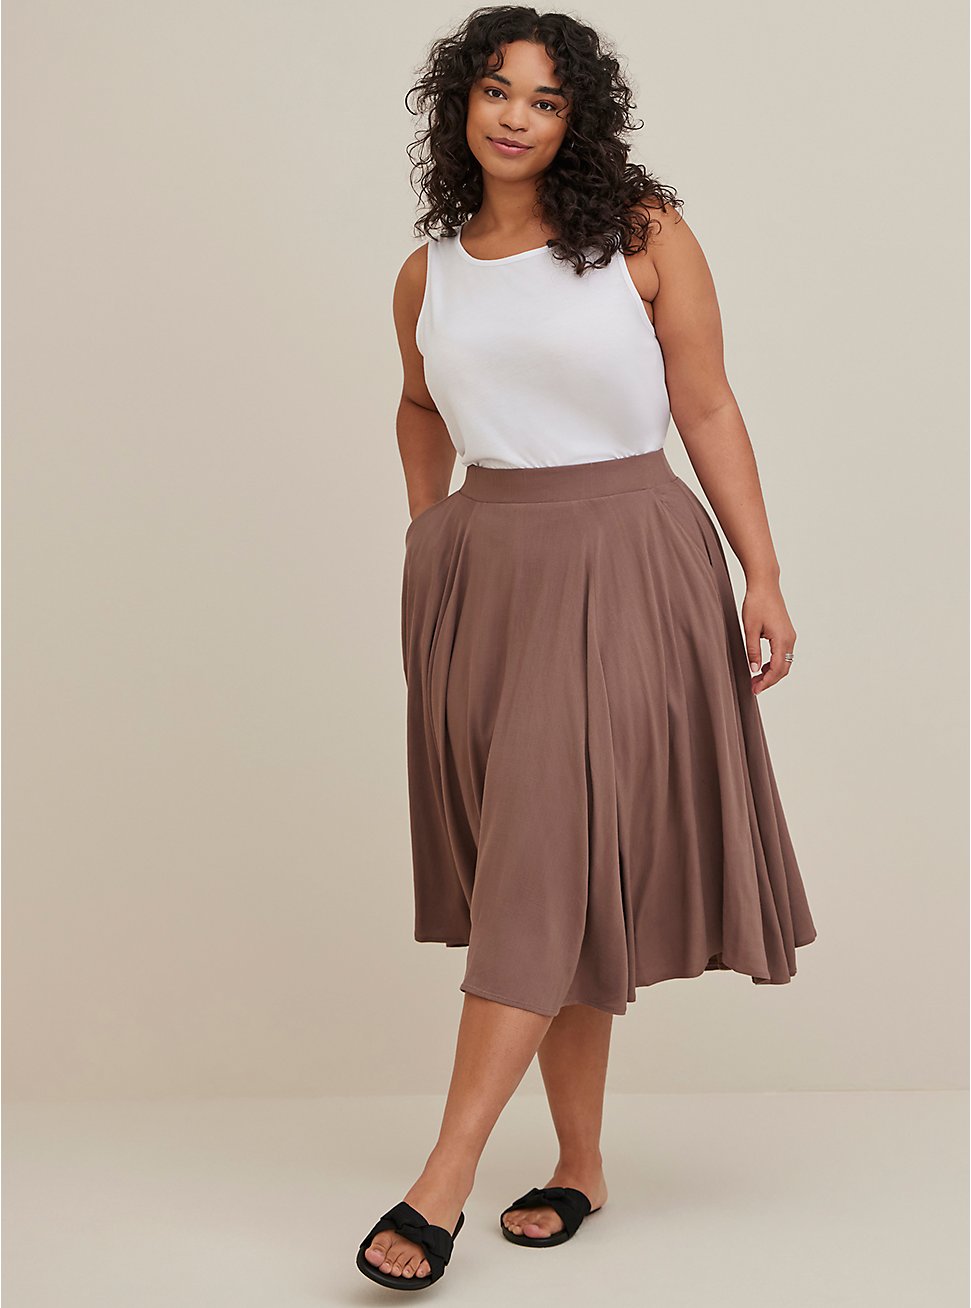 Plus Size Midi Skirt - Brown, BROWN, hi-res